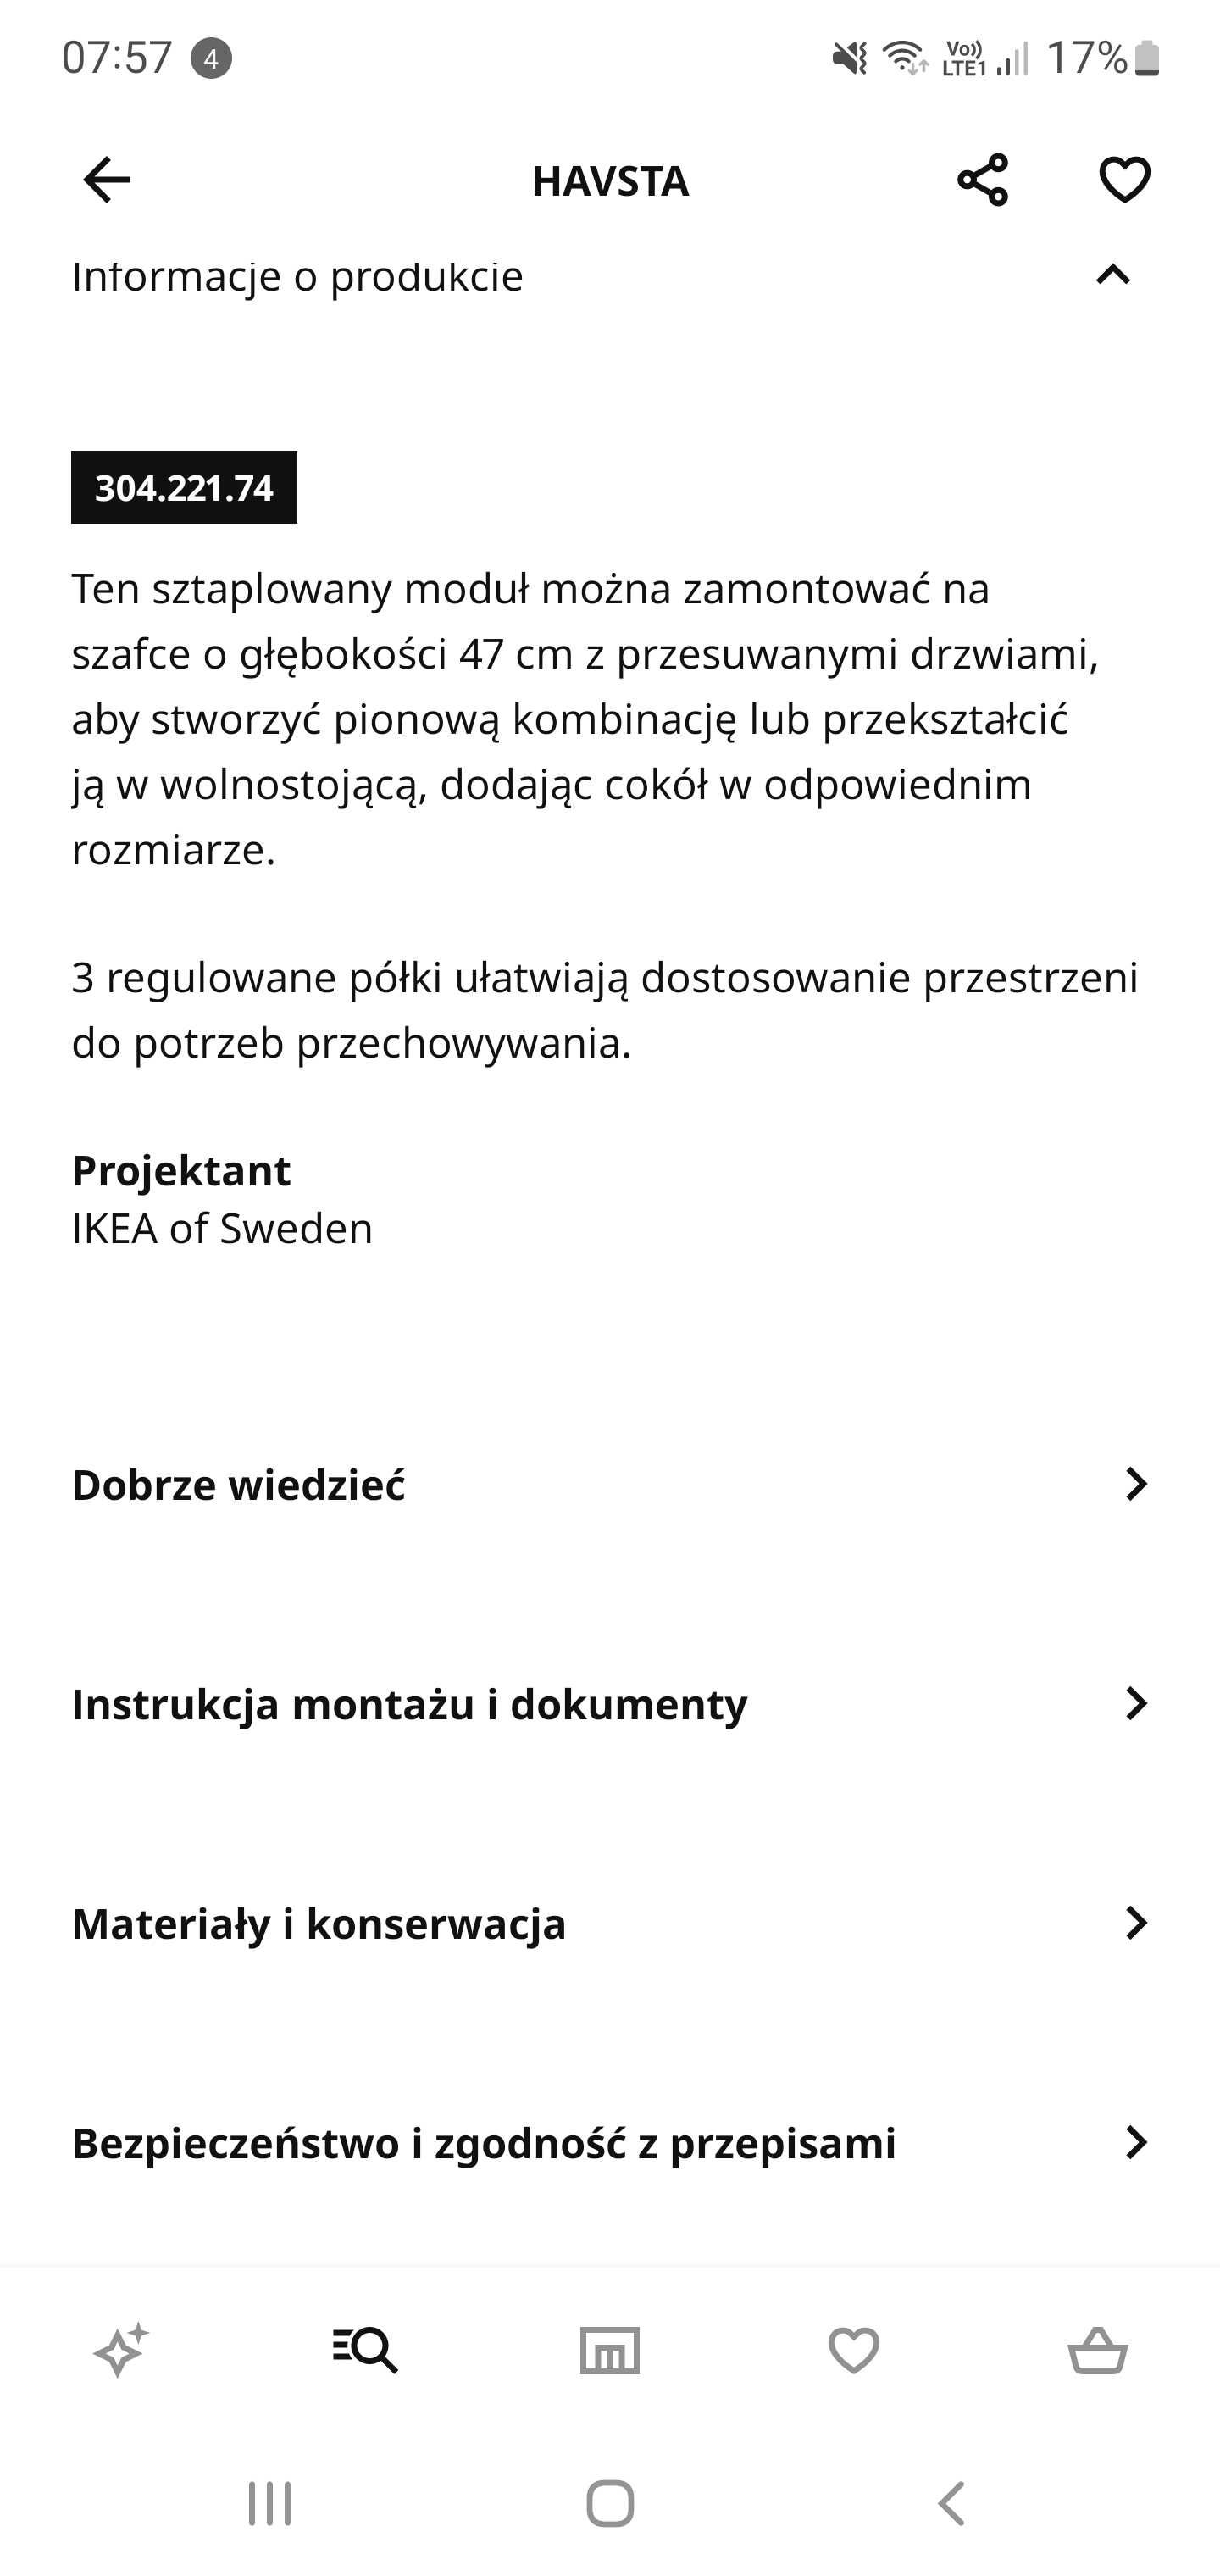 Witryna IKEA Havsta